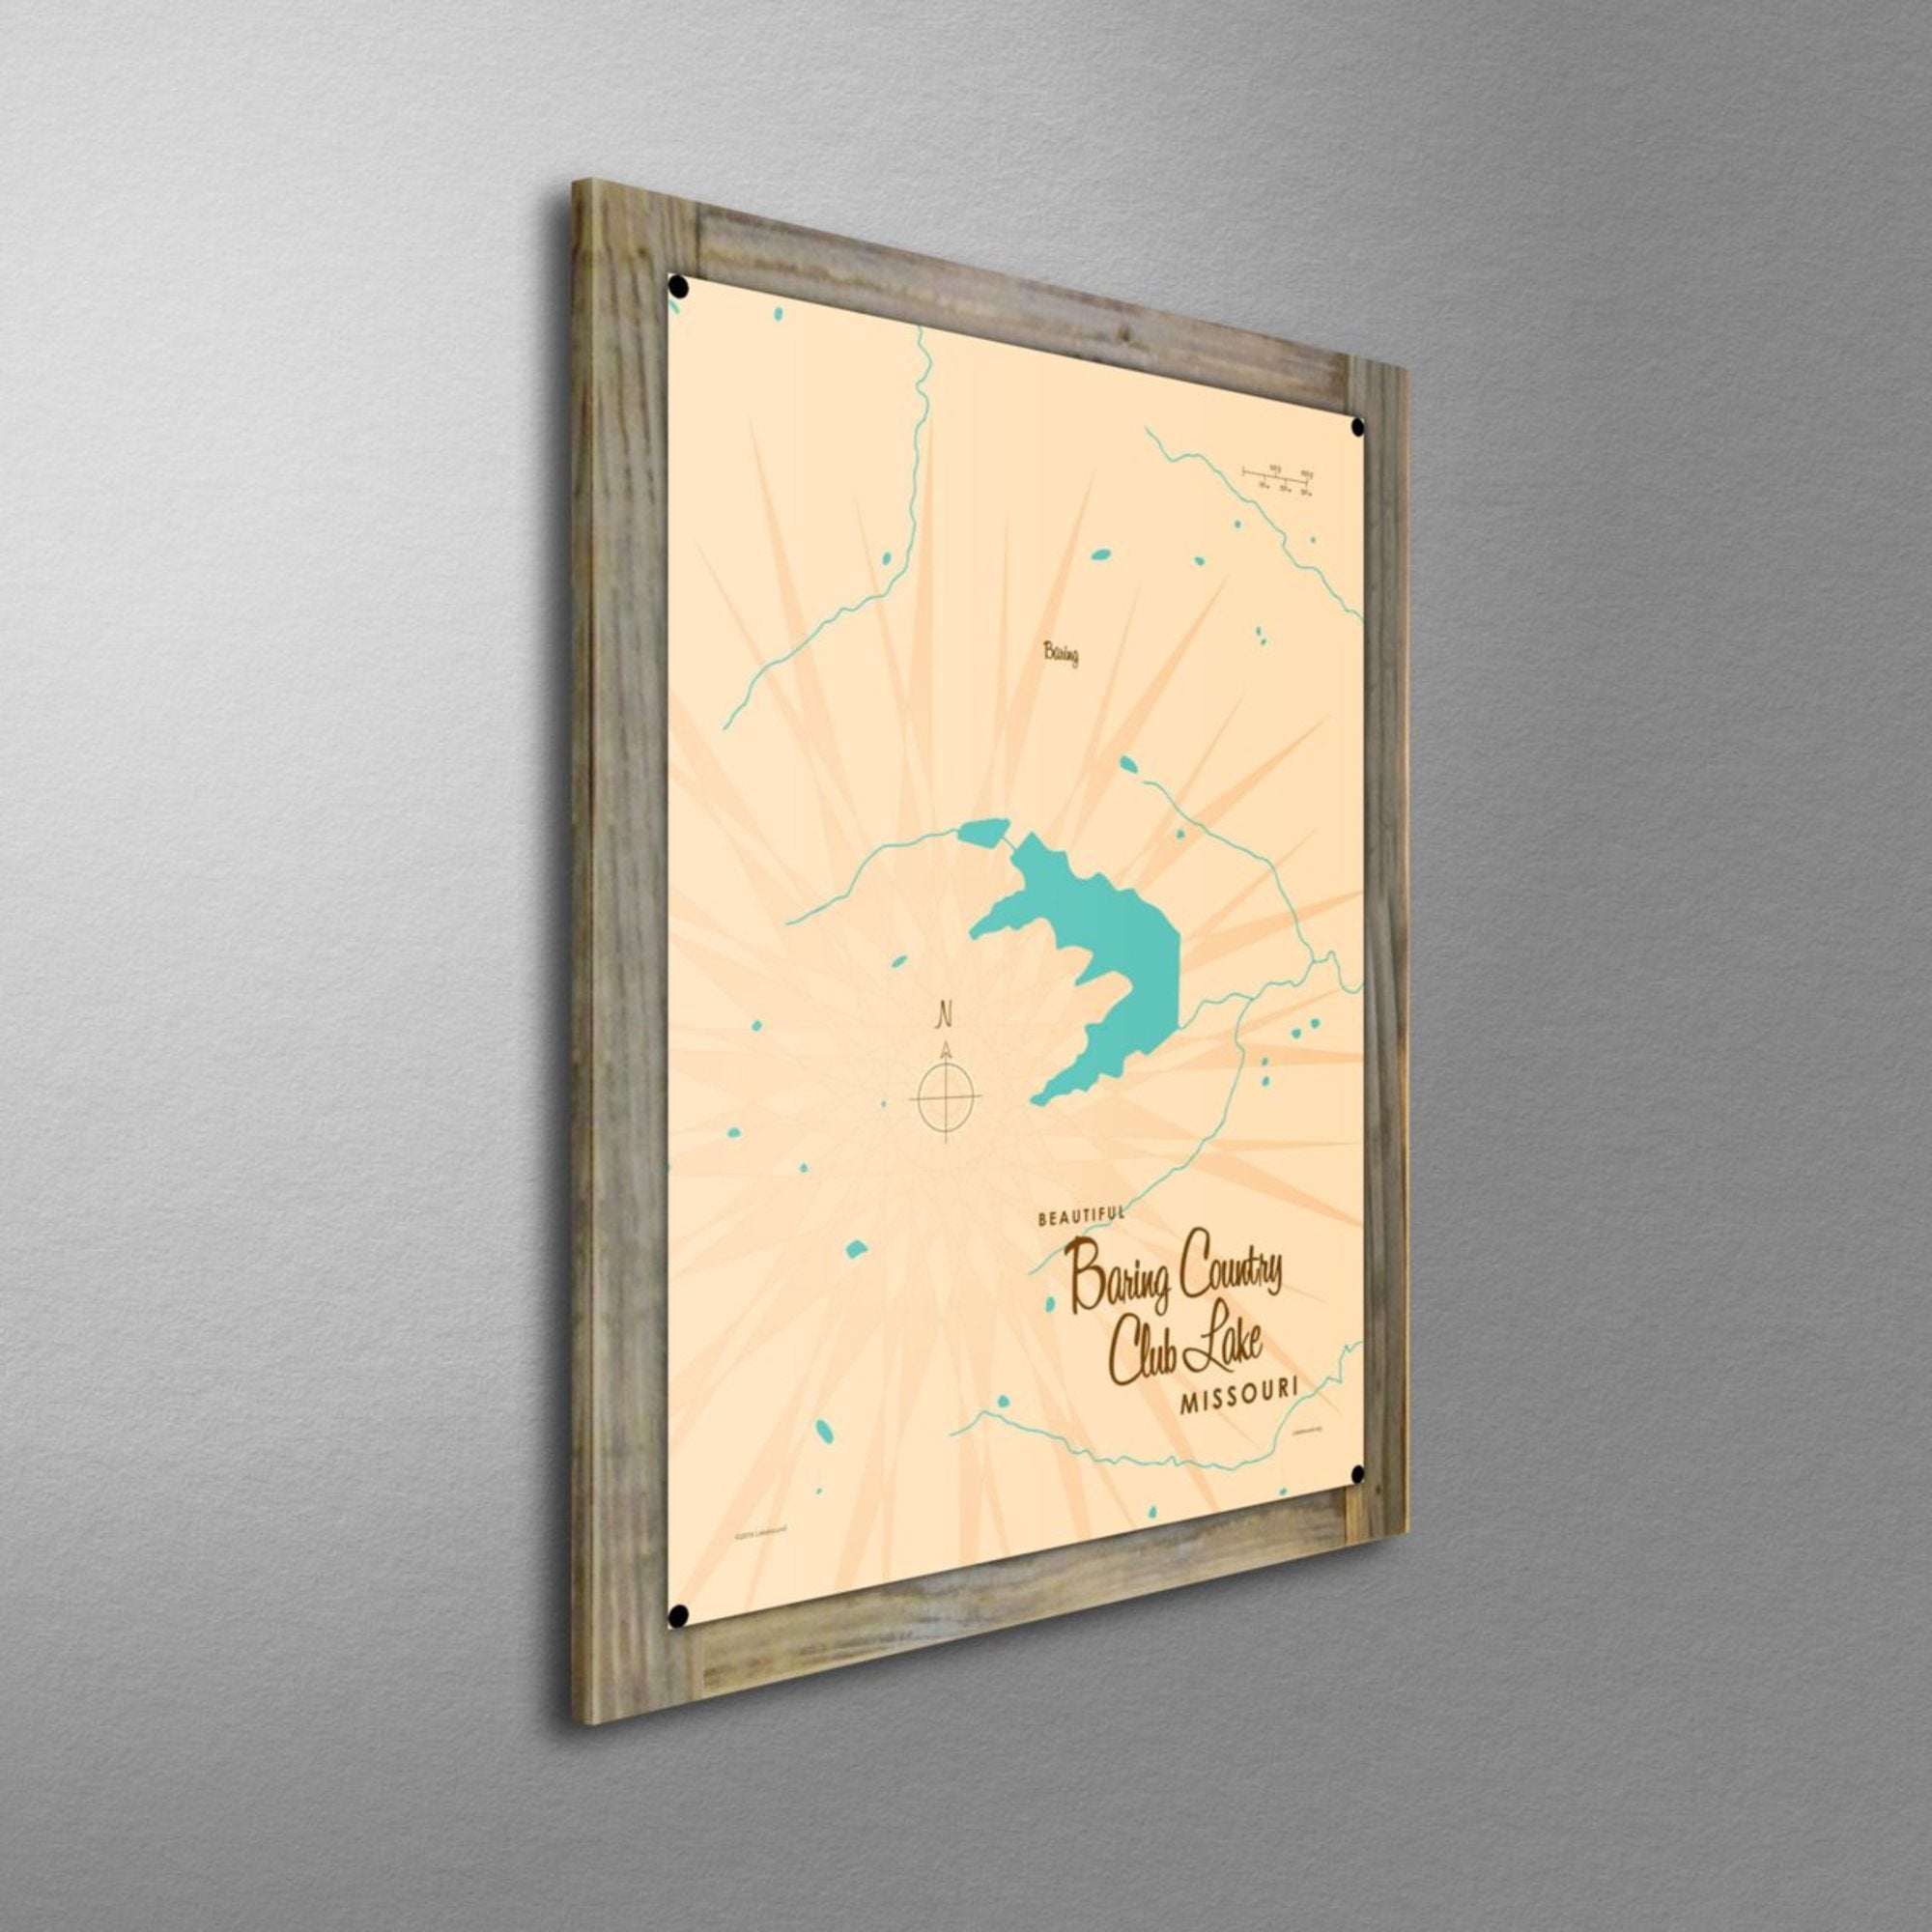 Baring Country Club Lake Missouri, Wood-Mounted Metal Sign Map Art